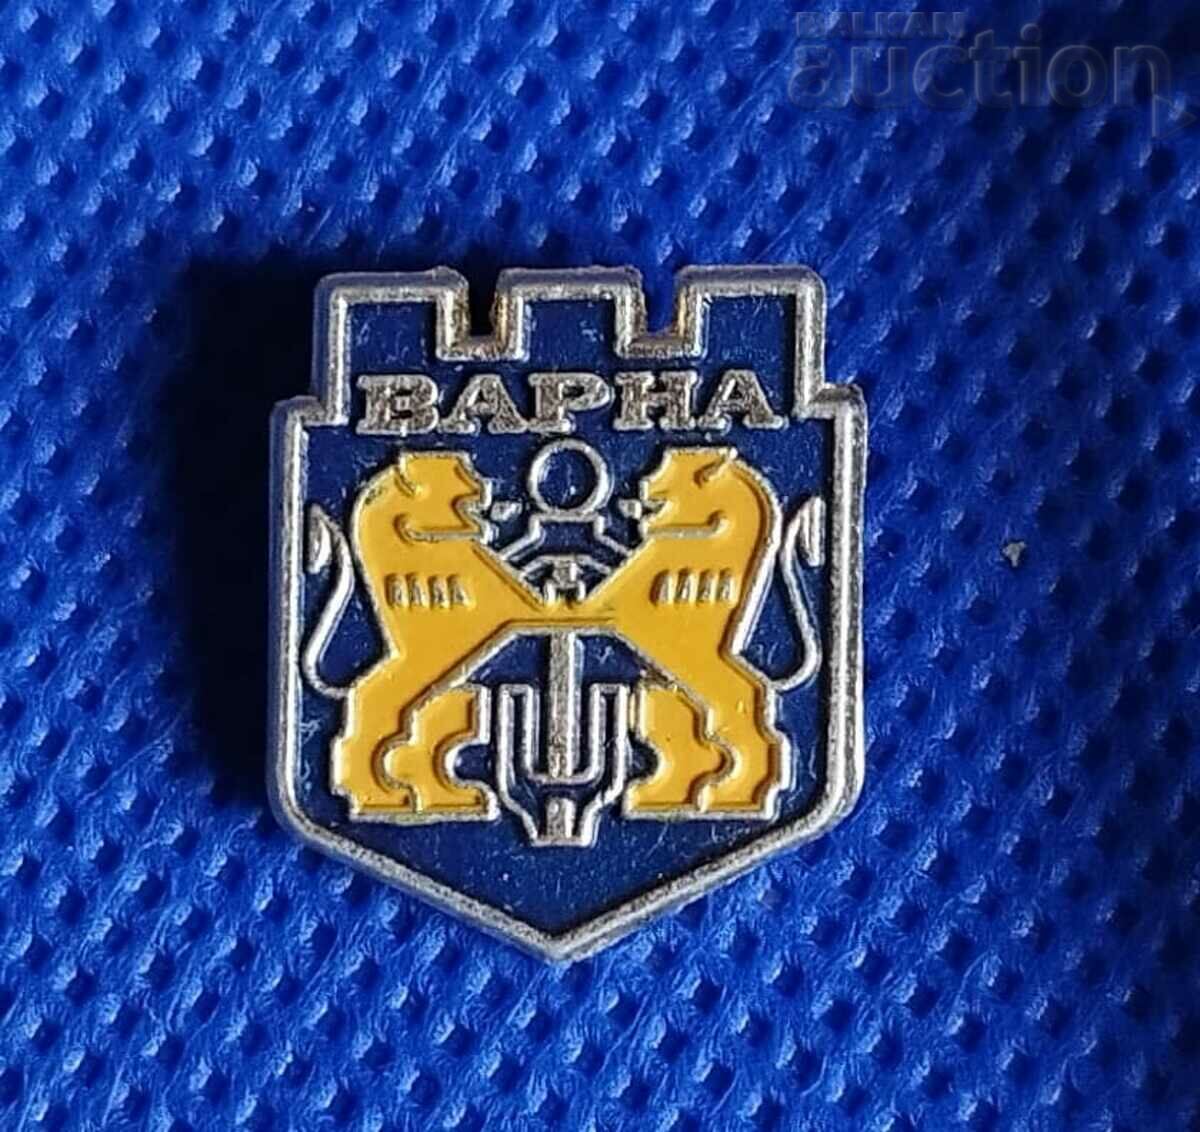 Metal retro badge - Varna & coat of arms